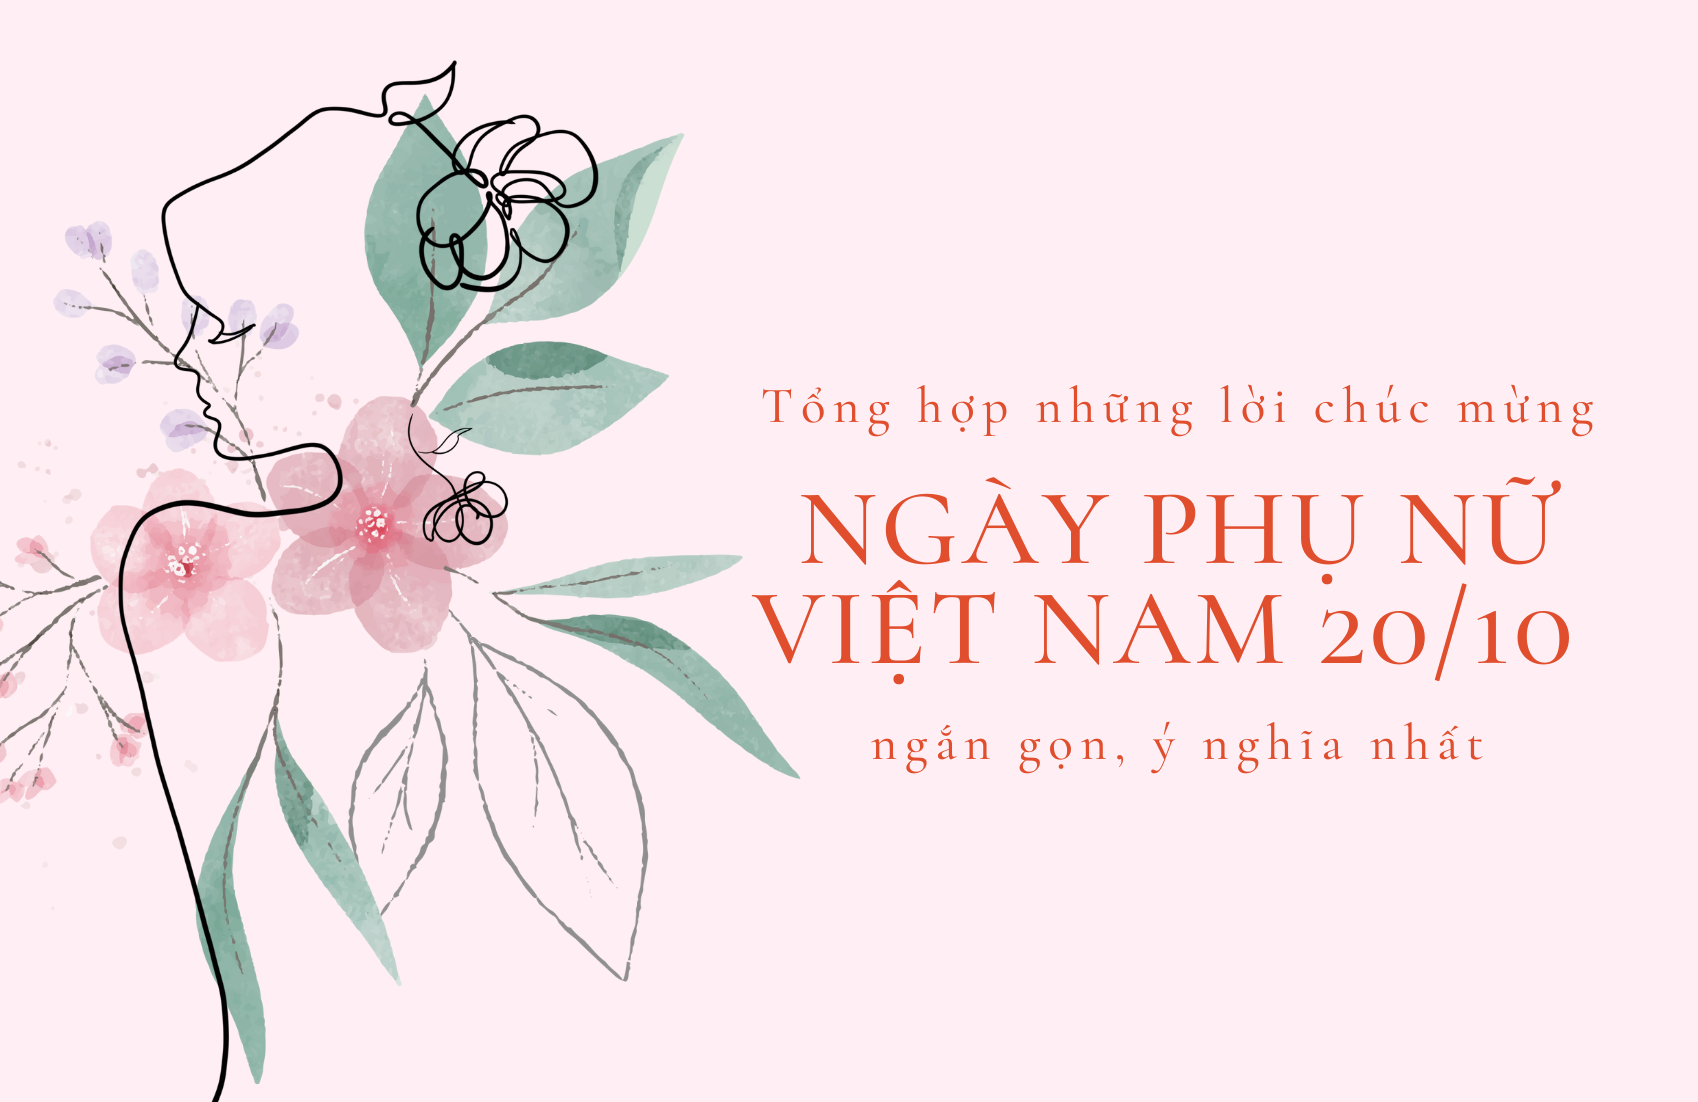 Tổng hợp những lời chúc mừng Ngày Phụ nữ Việt Nam 20/10 ngắn gọn, ý nghĩa nhất